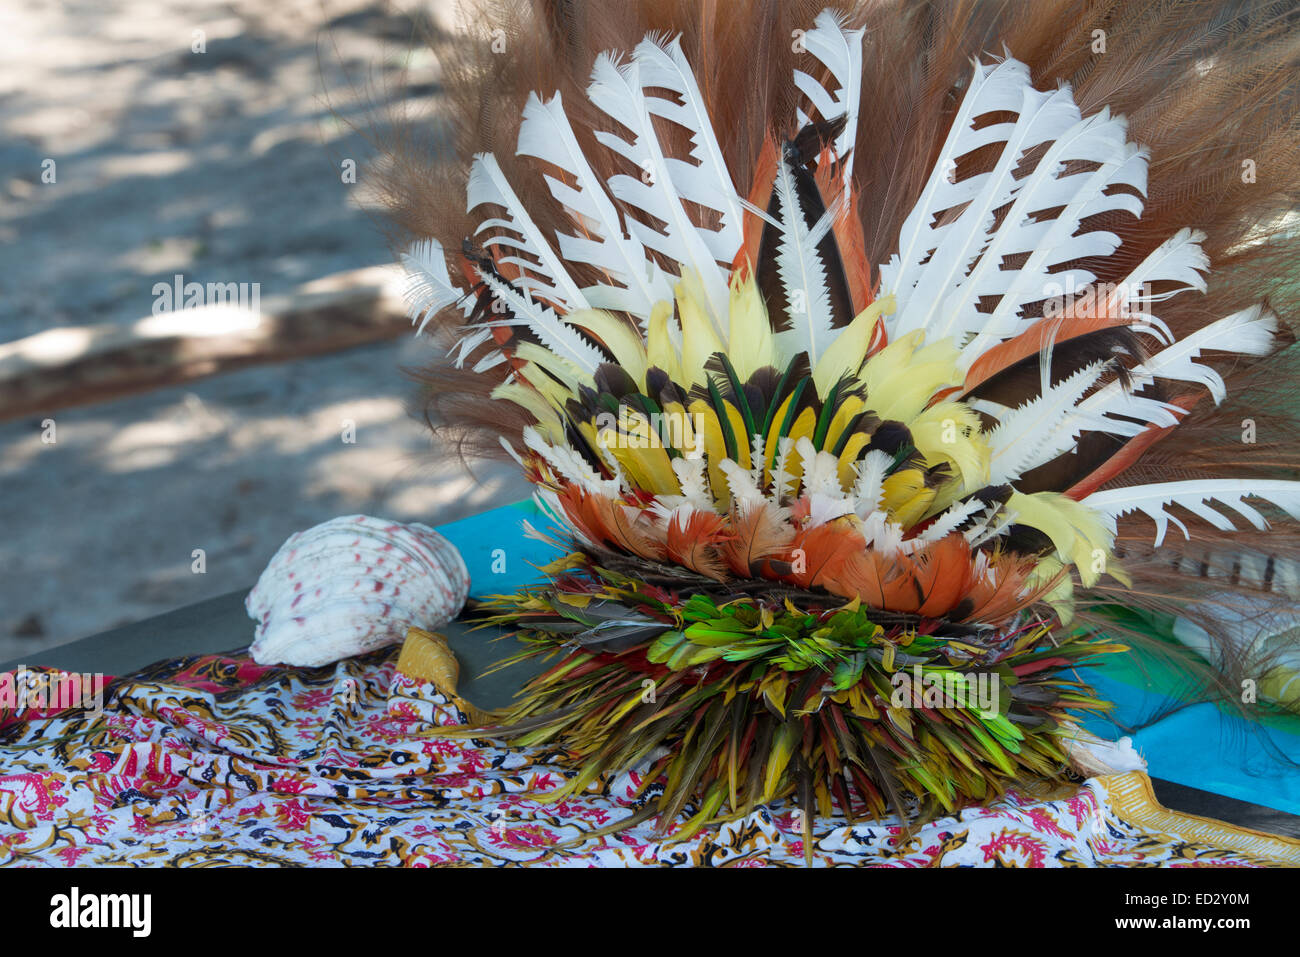 Melanesien, Papua Neu Guinea, Tufi. Dorf ist bekannt für ihre kunstvollen tropischer Vogel Federn Kopfbedeckungen. Feder Kopfschmuck. Stockfoto